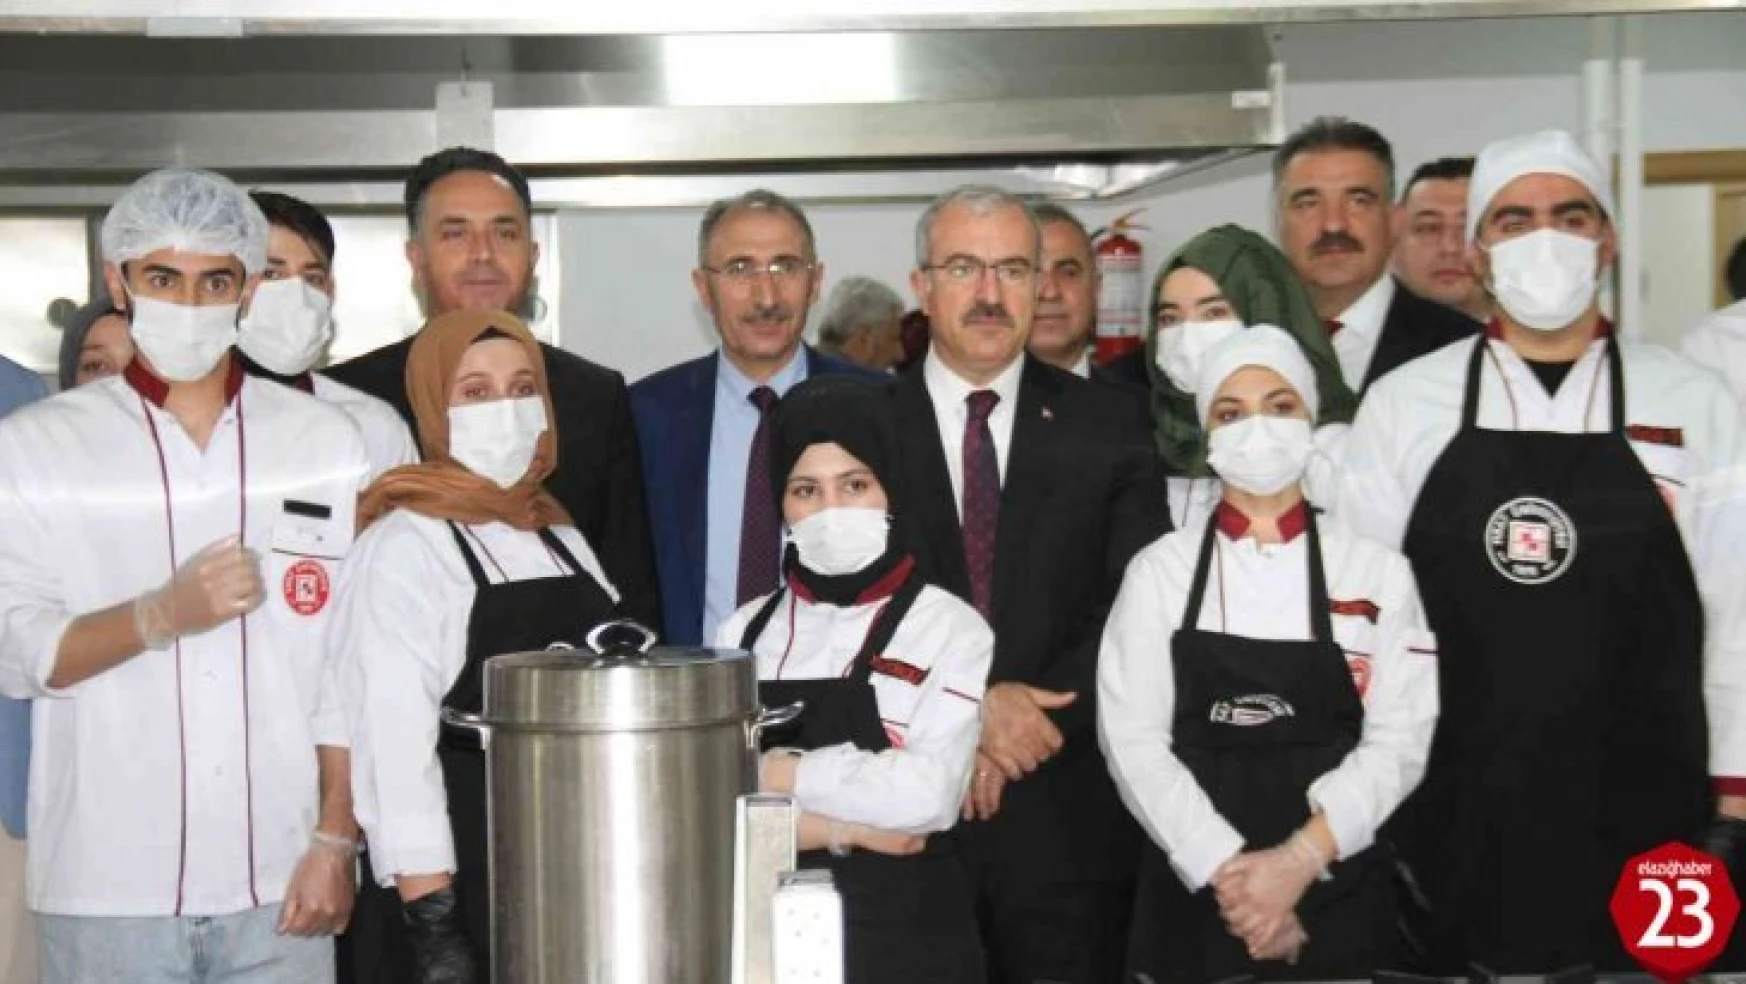 Fırat Üniversitesi'nde aşçılık mutfağı açıldı